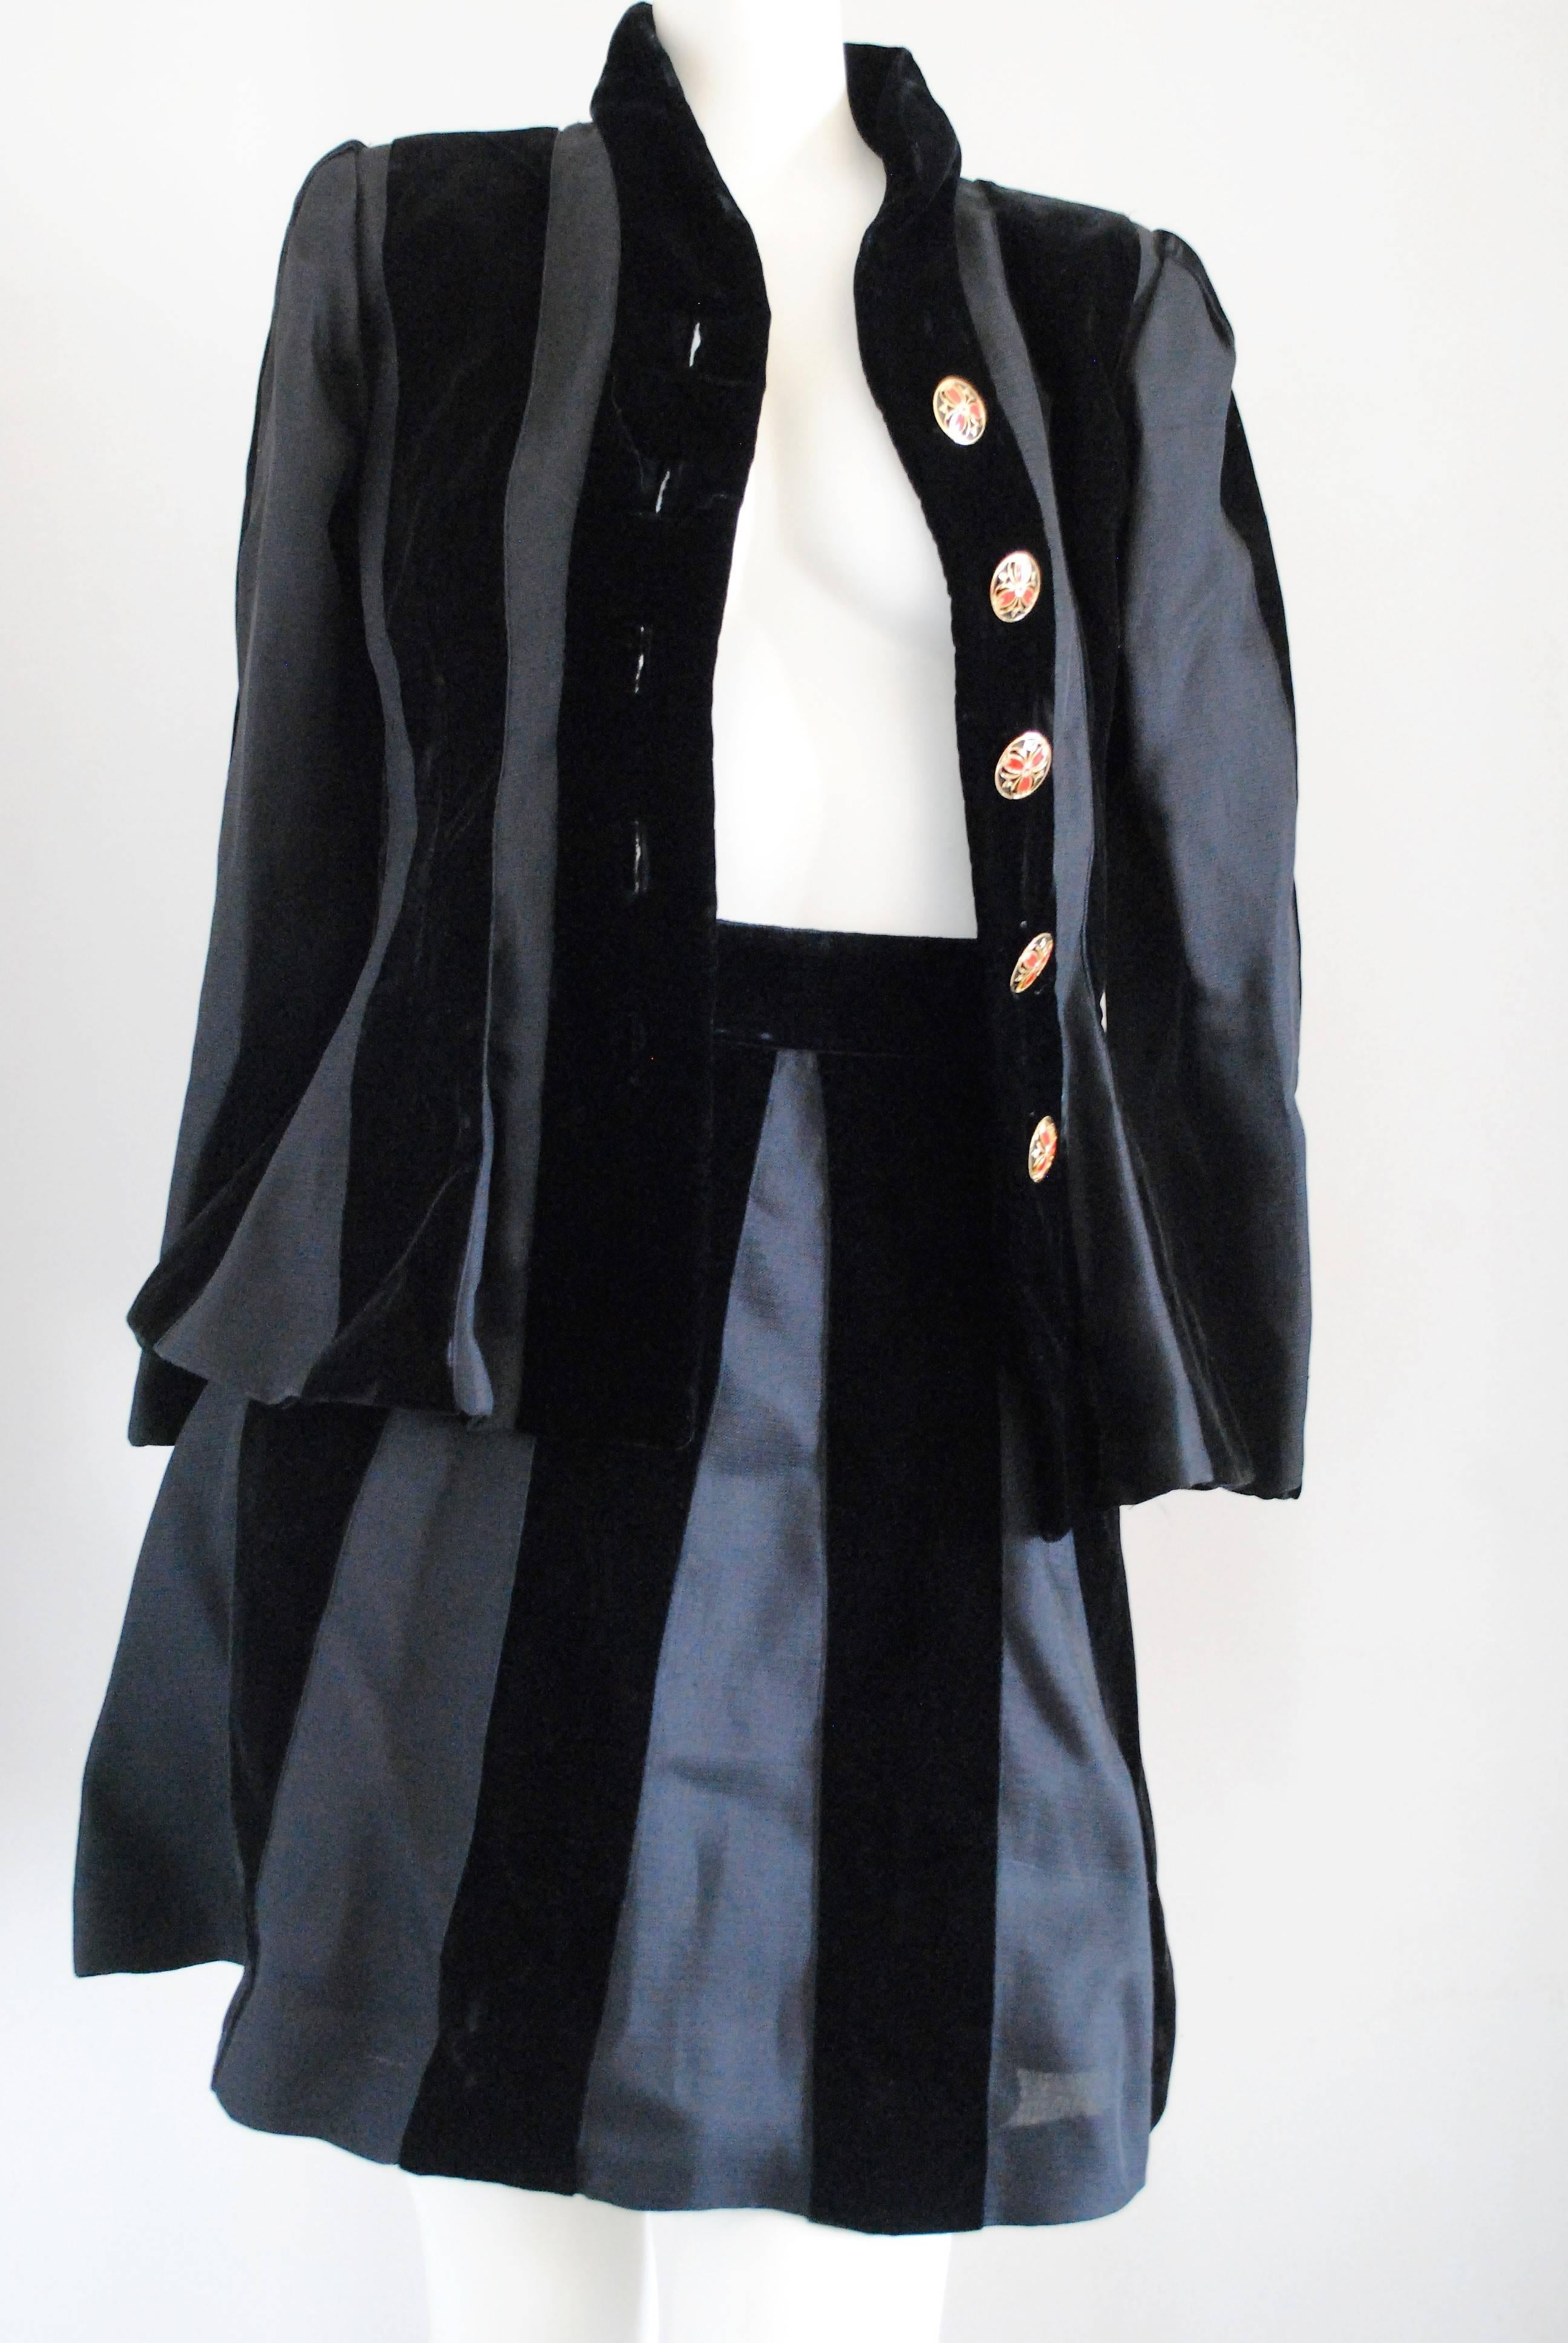 Yves Saint Laurent Rive Gauche Skirt Suit 2